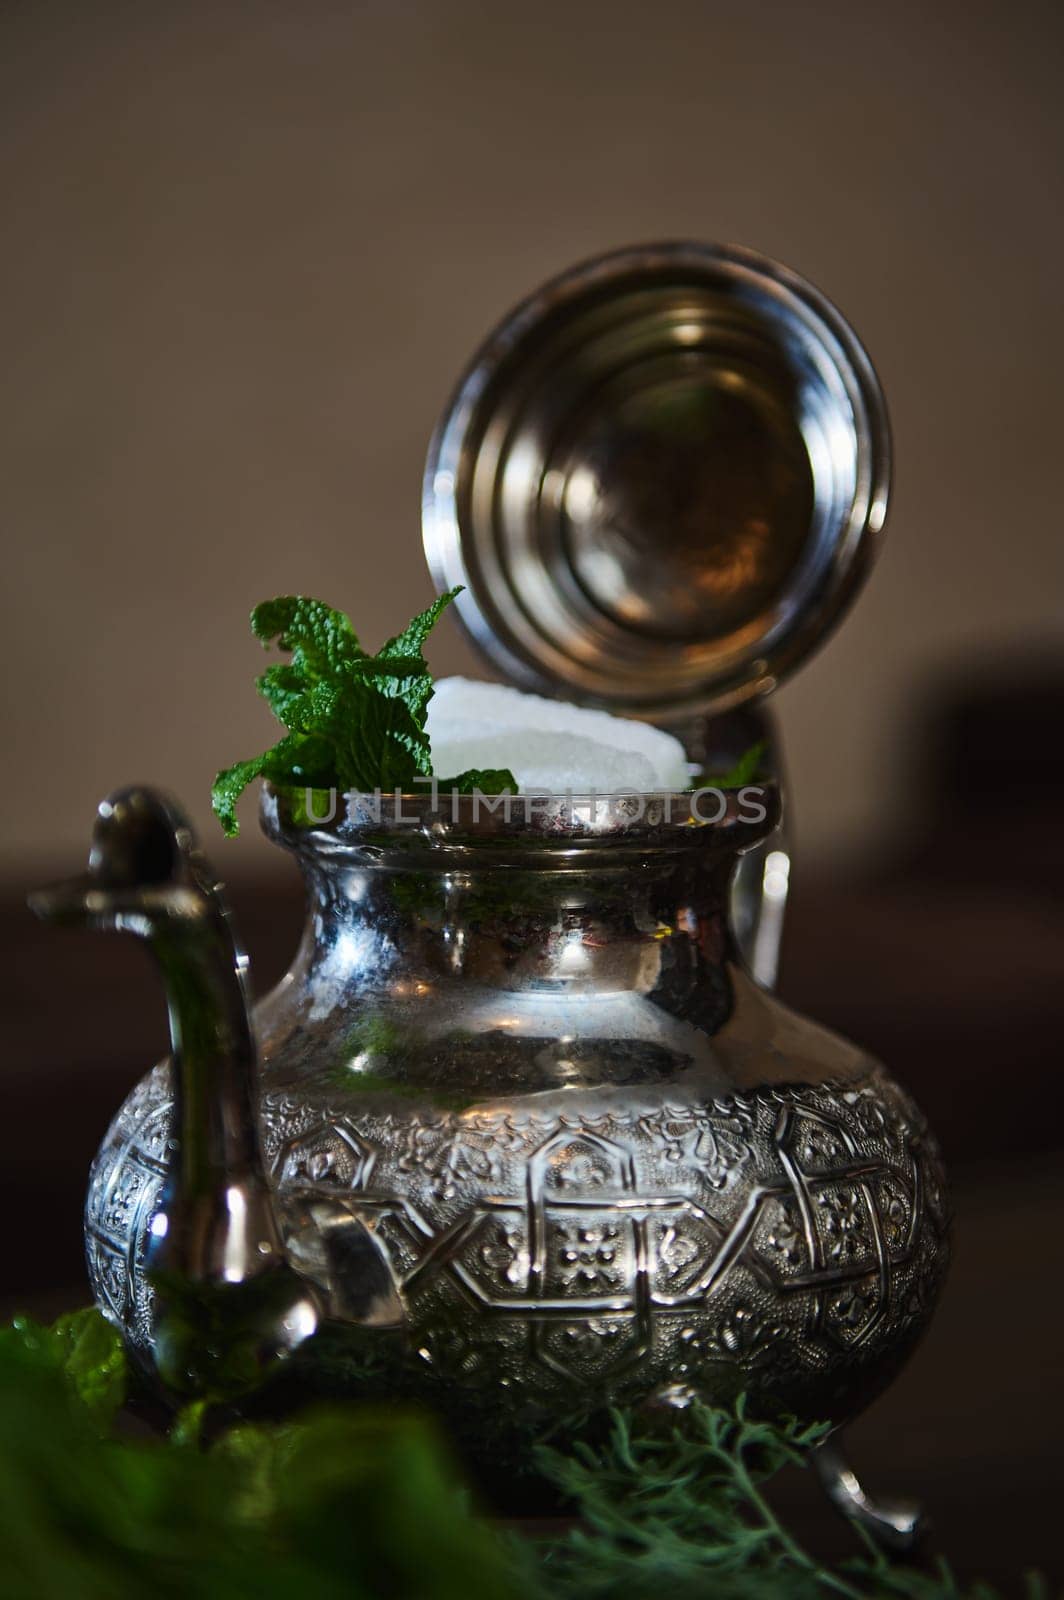 Moroccan tea a la menthe by artgf